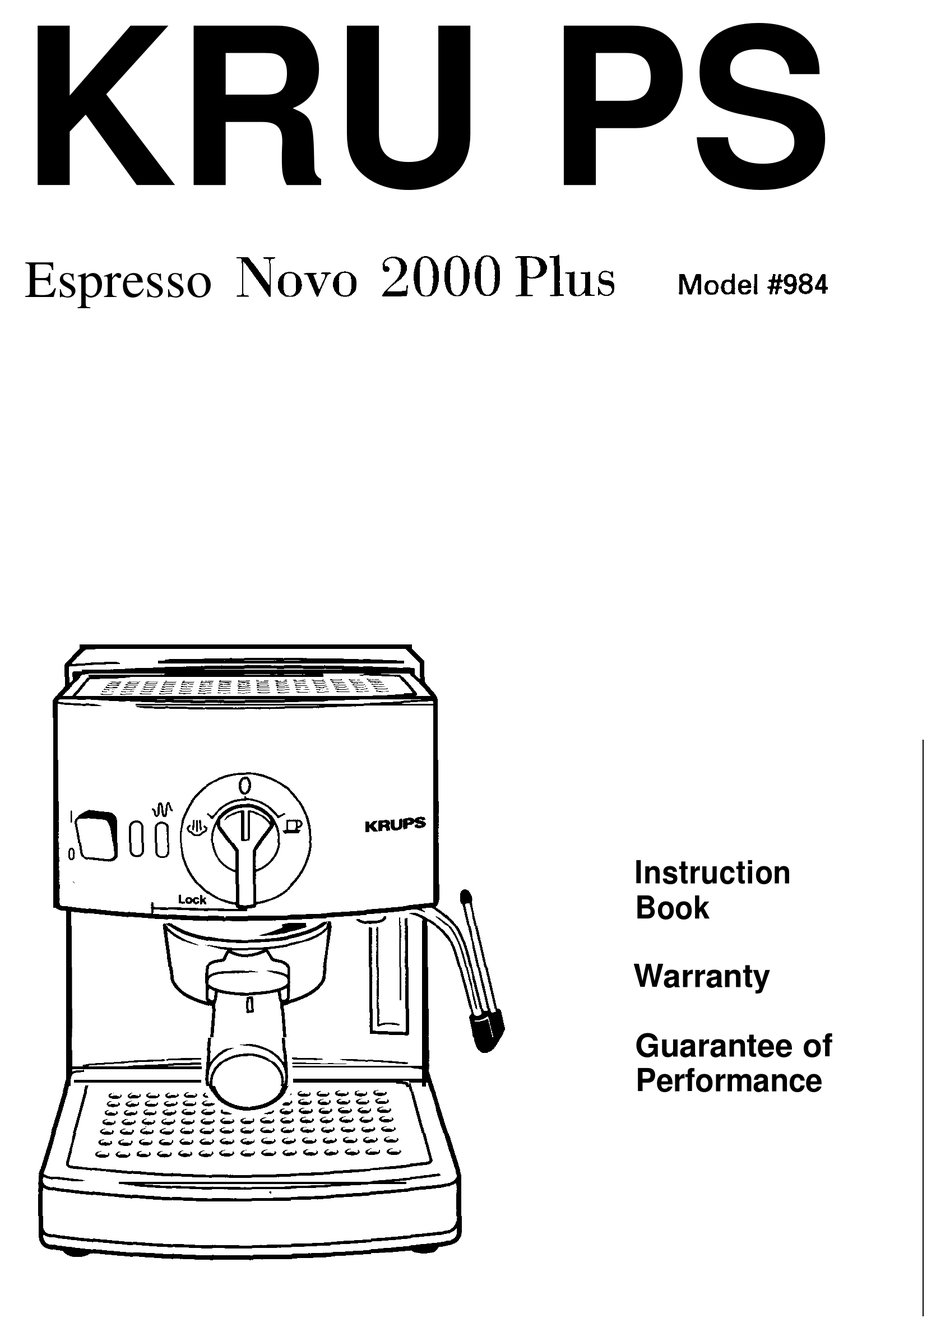 https://data2.manualslib.com/first-image/i13/65/6436/643561/krups-espresso-novo-2000-plus.png